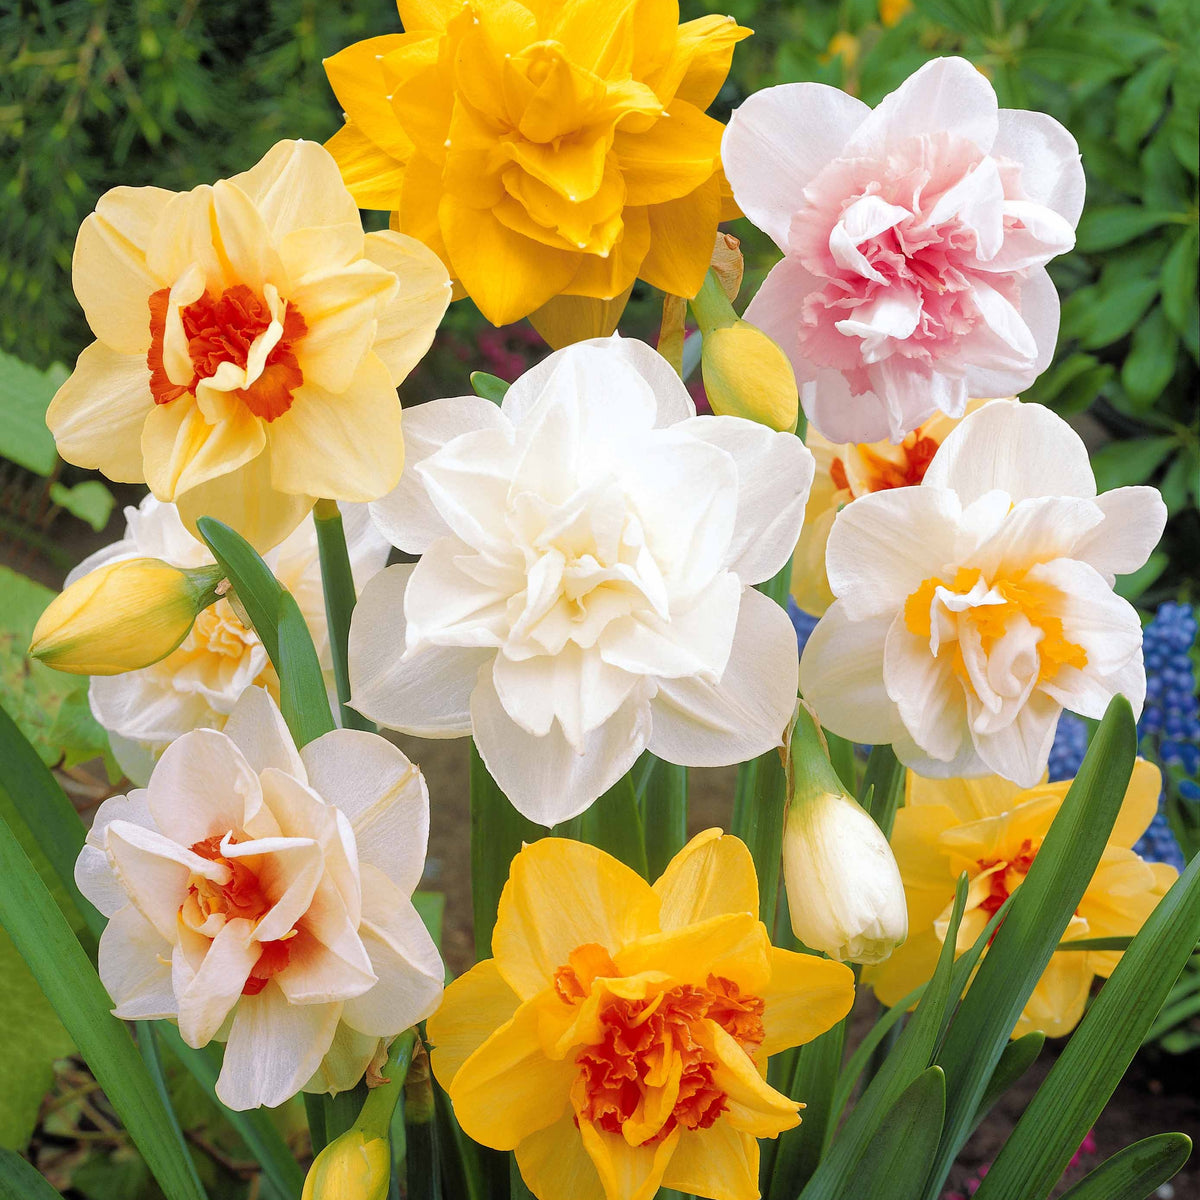 10 Narcisses à fleurs doubles Flower parade - Narcissus flower parade - Bulbes à fleurs